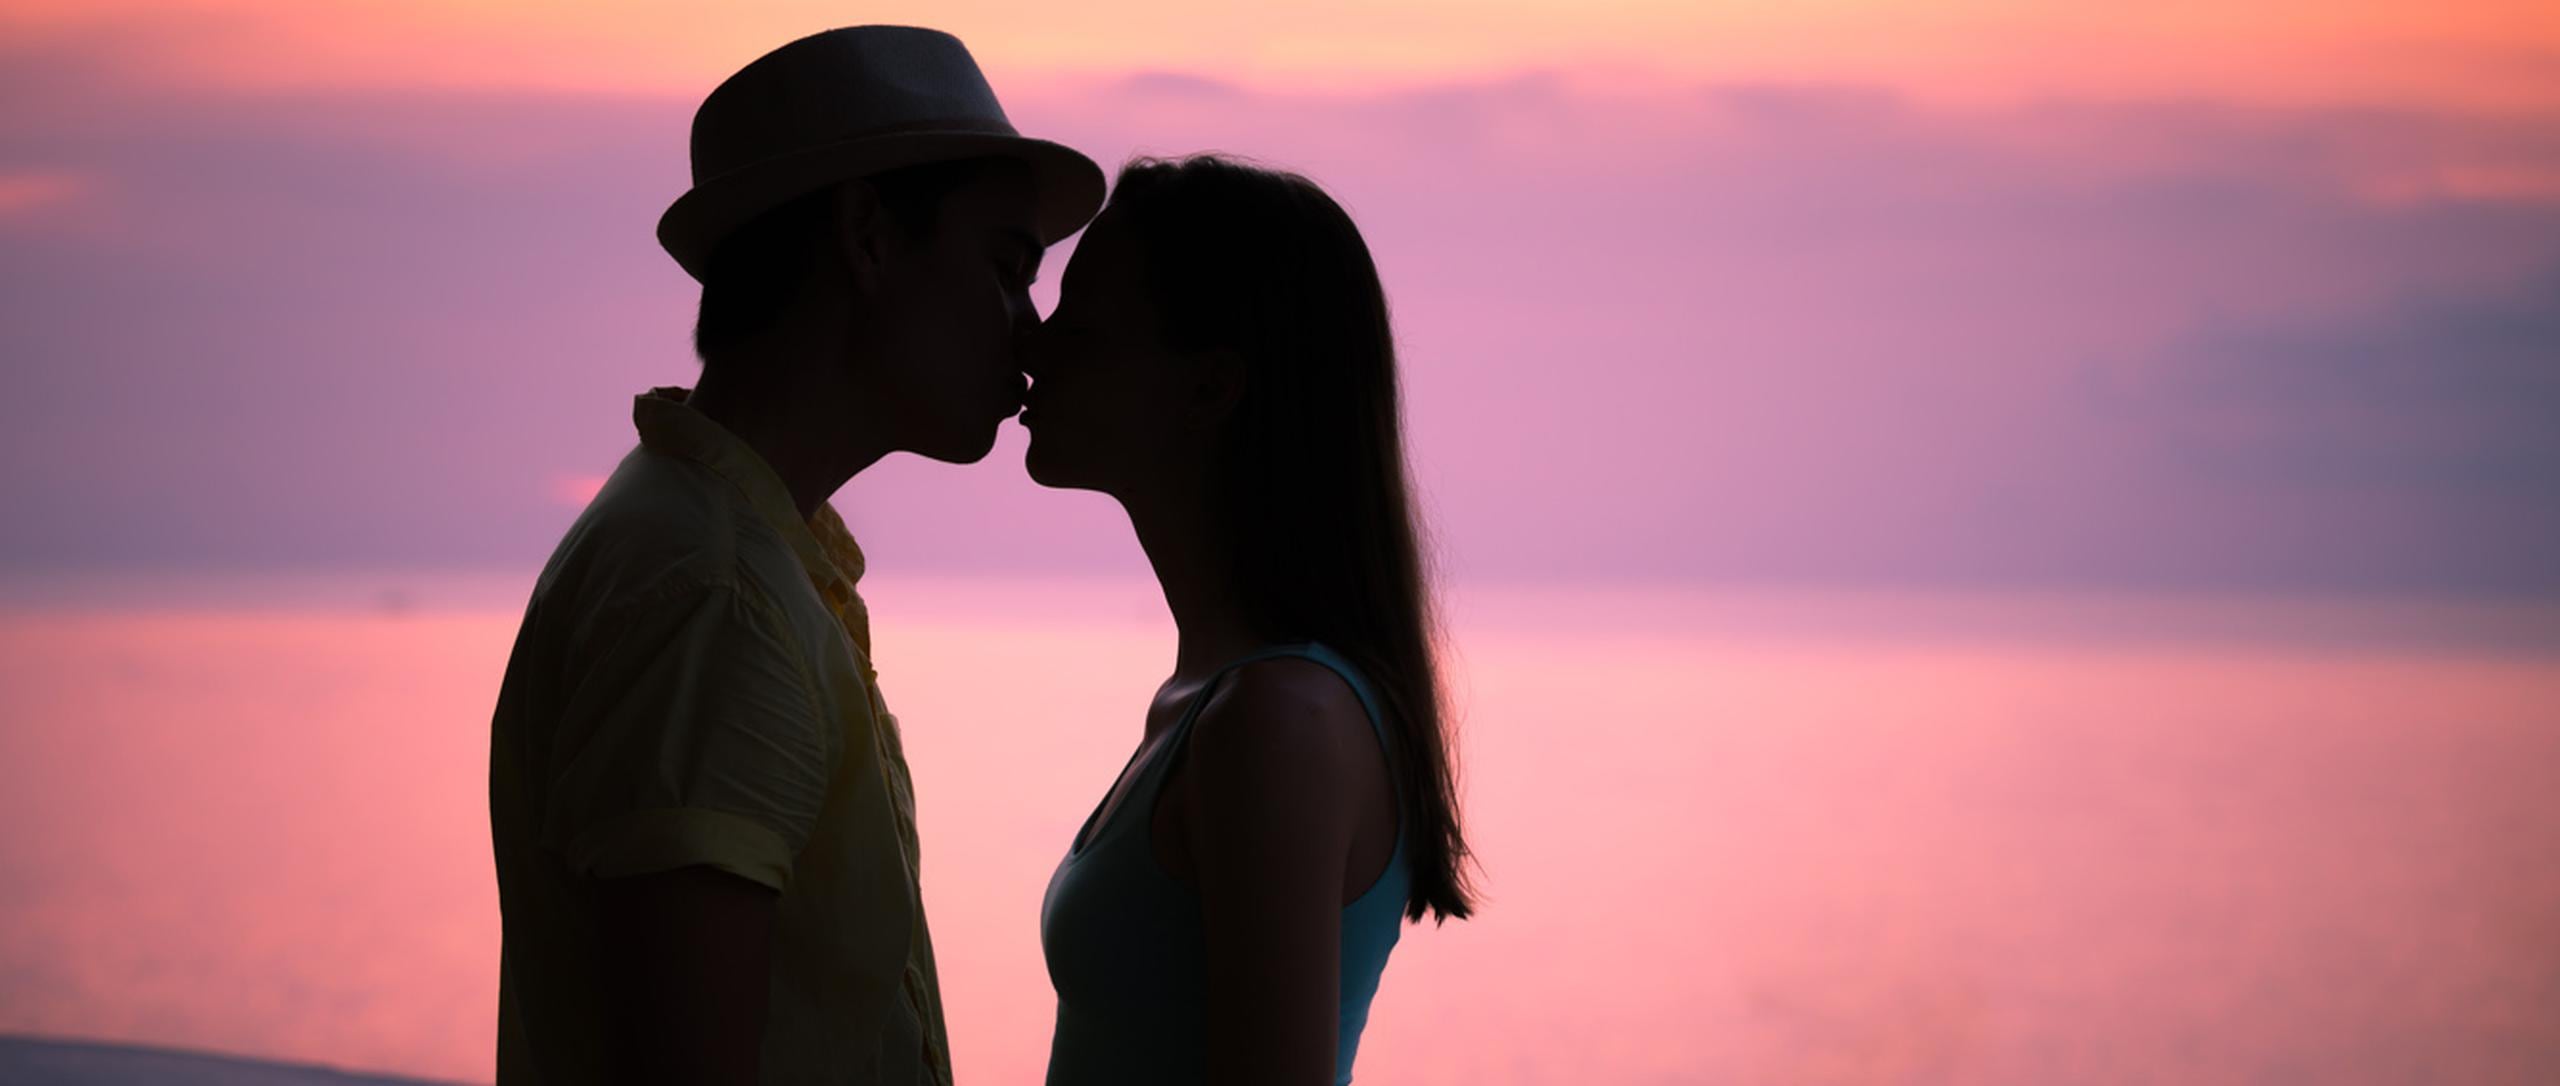 Según un estudio, las ganas de besar se deben a la actuación de una multitud de hormonas y, además del efecto placentero, al parecer besarse es hasta bueno para la salud. (Shutterstock)